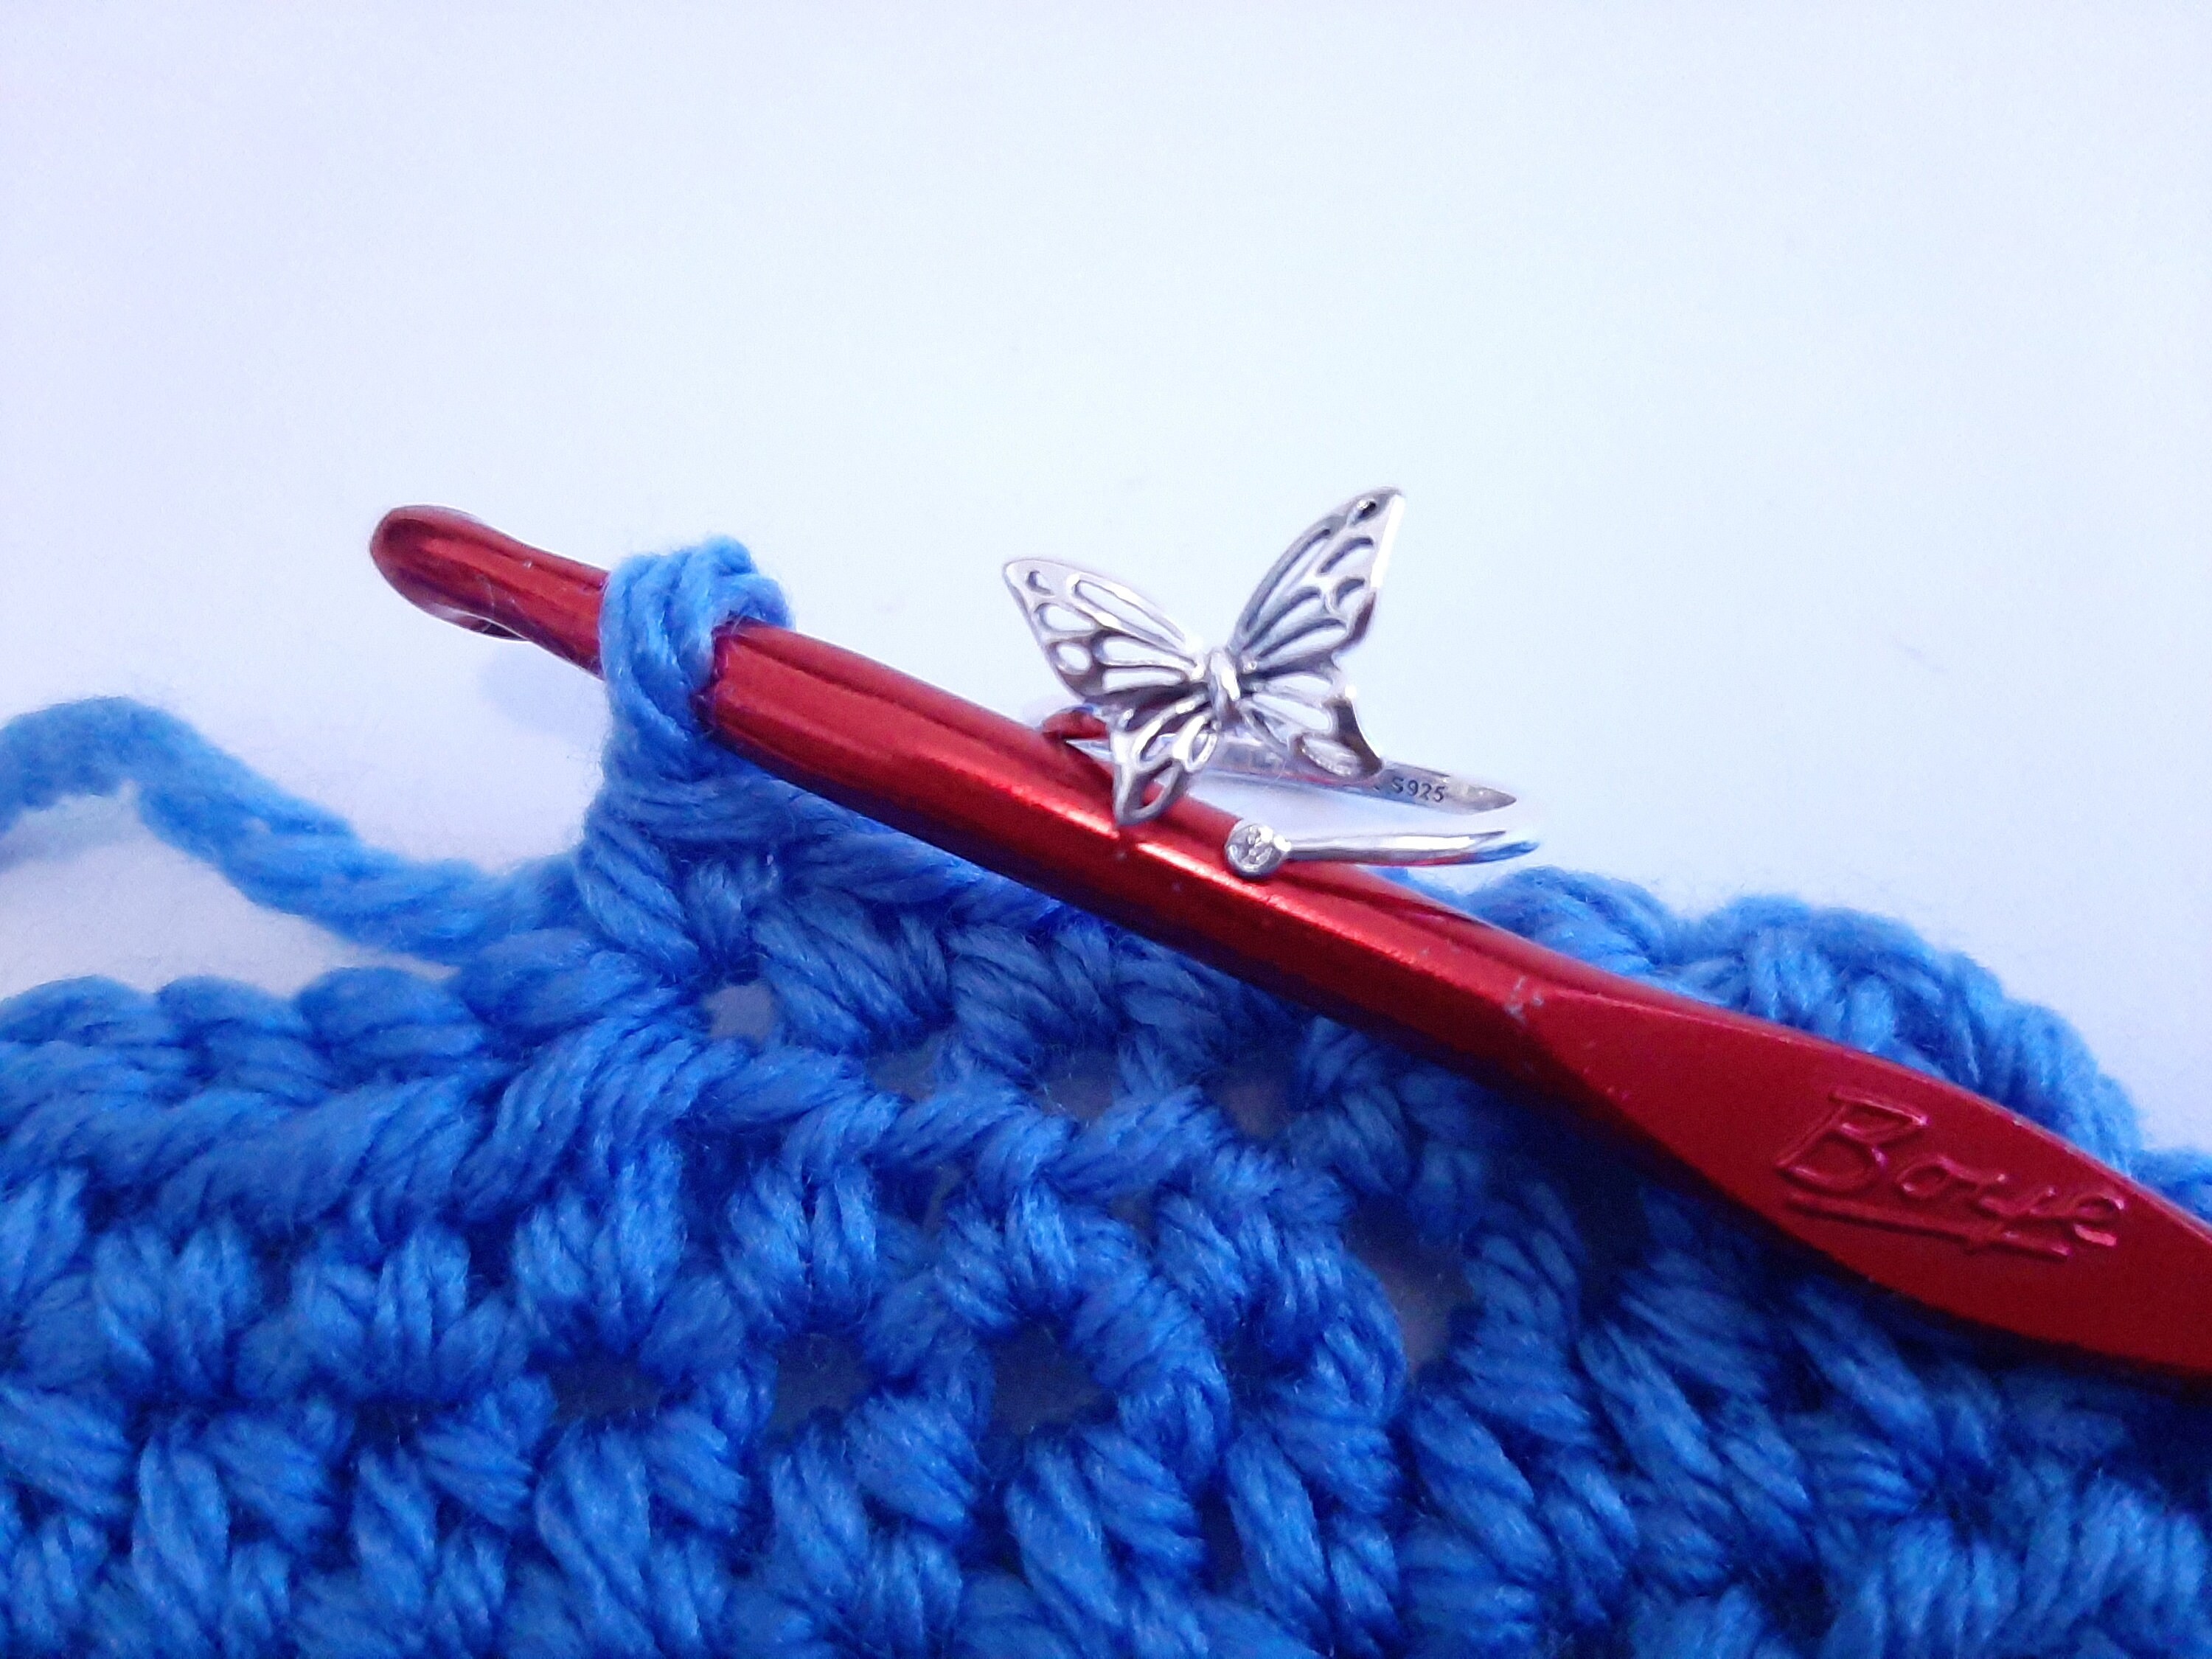  Handmade Crochet Tension Ring For Finger, Left Handed, Right  Handed Zig Zag Ring, Yarn Tension Ring For Crochet, Crochet Gifts For  Crocheters, Christmas, Birthday Gift For Crochet Lovers, Knitters : Handmade